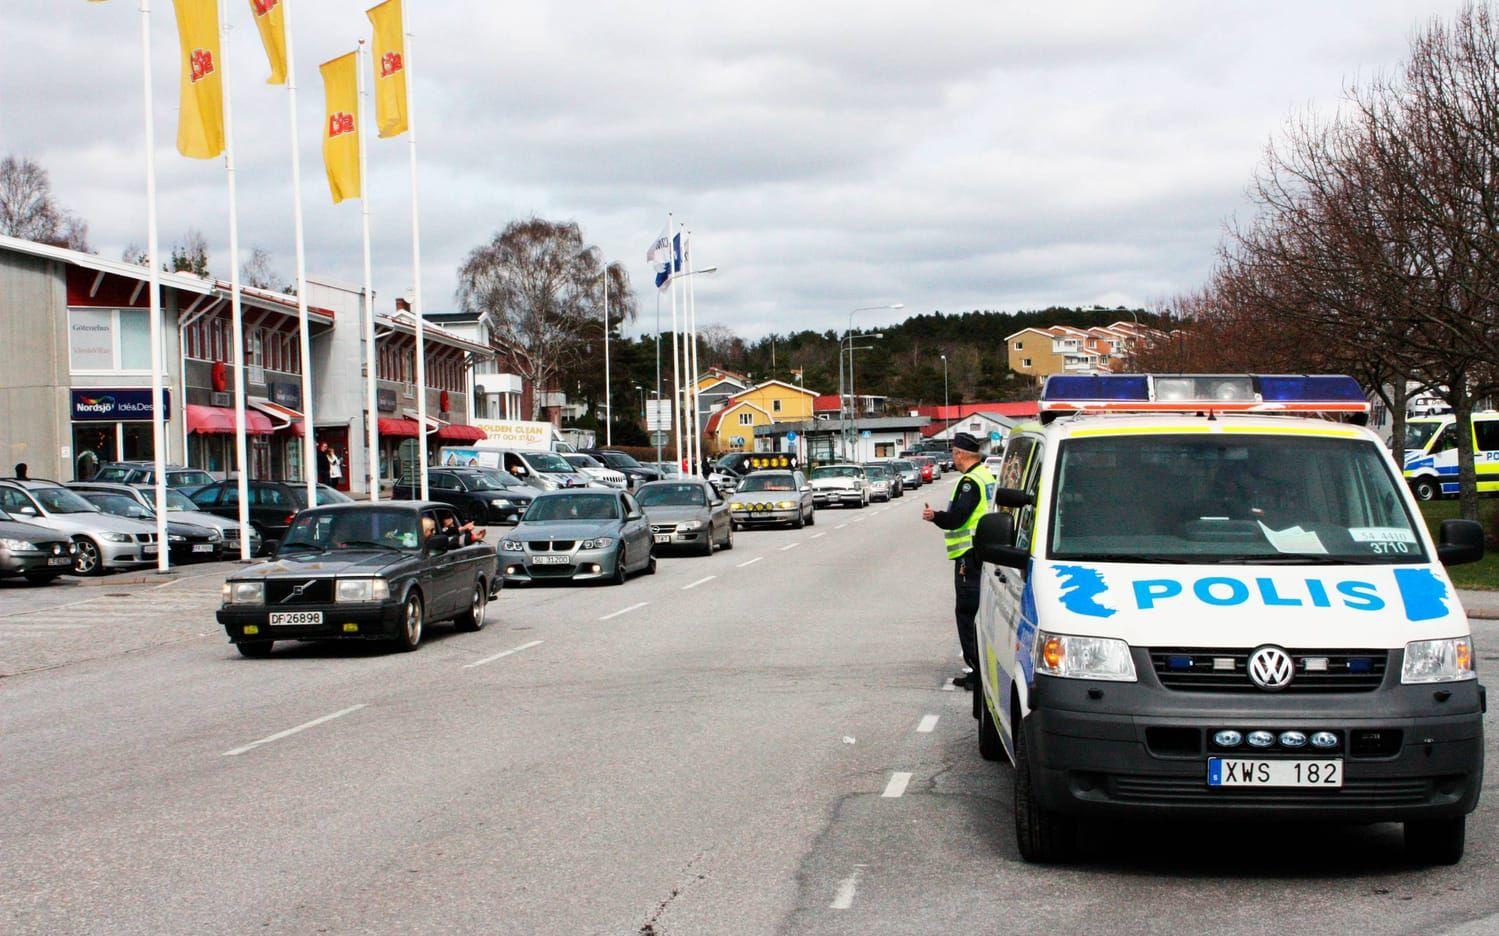 Vid Statoil, Oslovägen, har raggarna slagit upp ett läger. Polisen är på plats. Bild: Thomas Bennelind